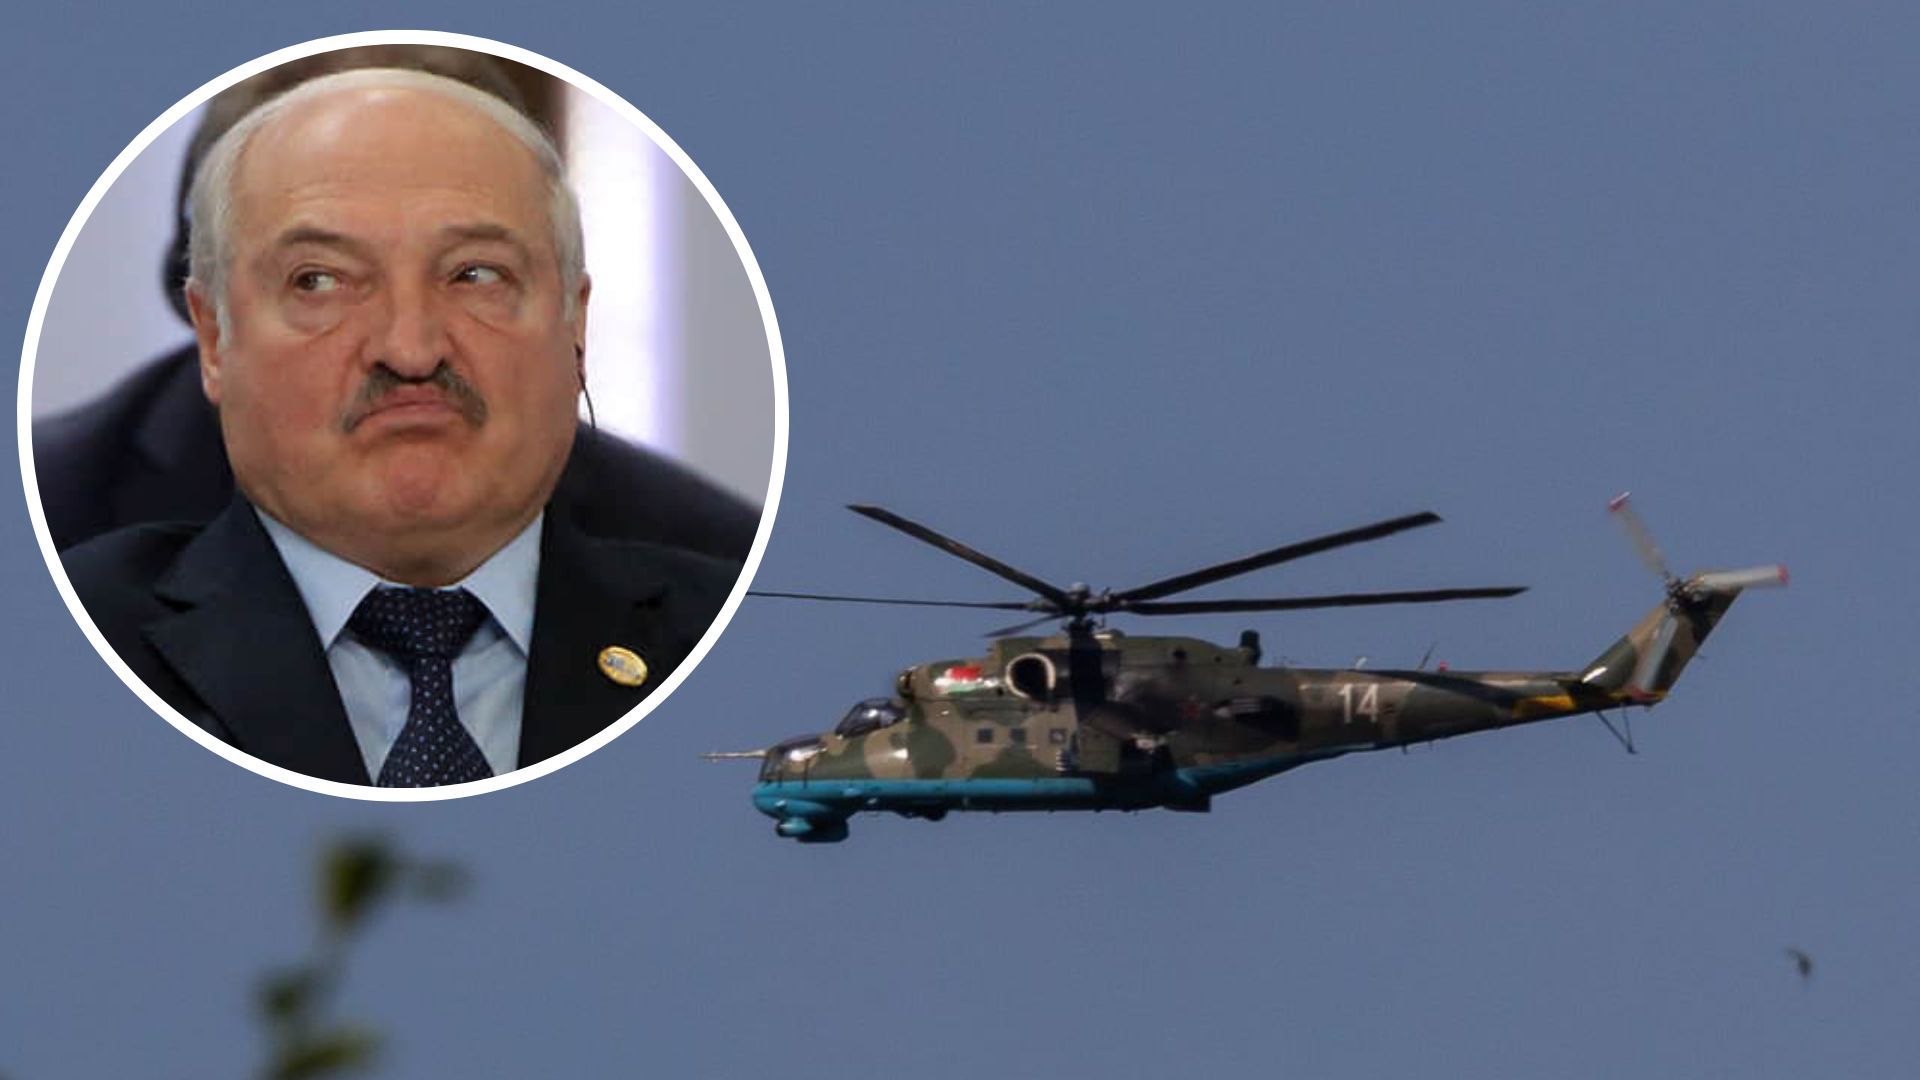 Белорусские вертолеты, пересекшие границу Польши, могли охранять Лукашенко